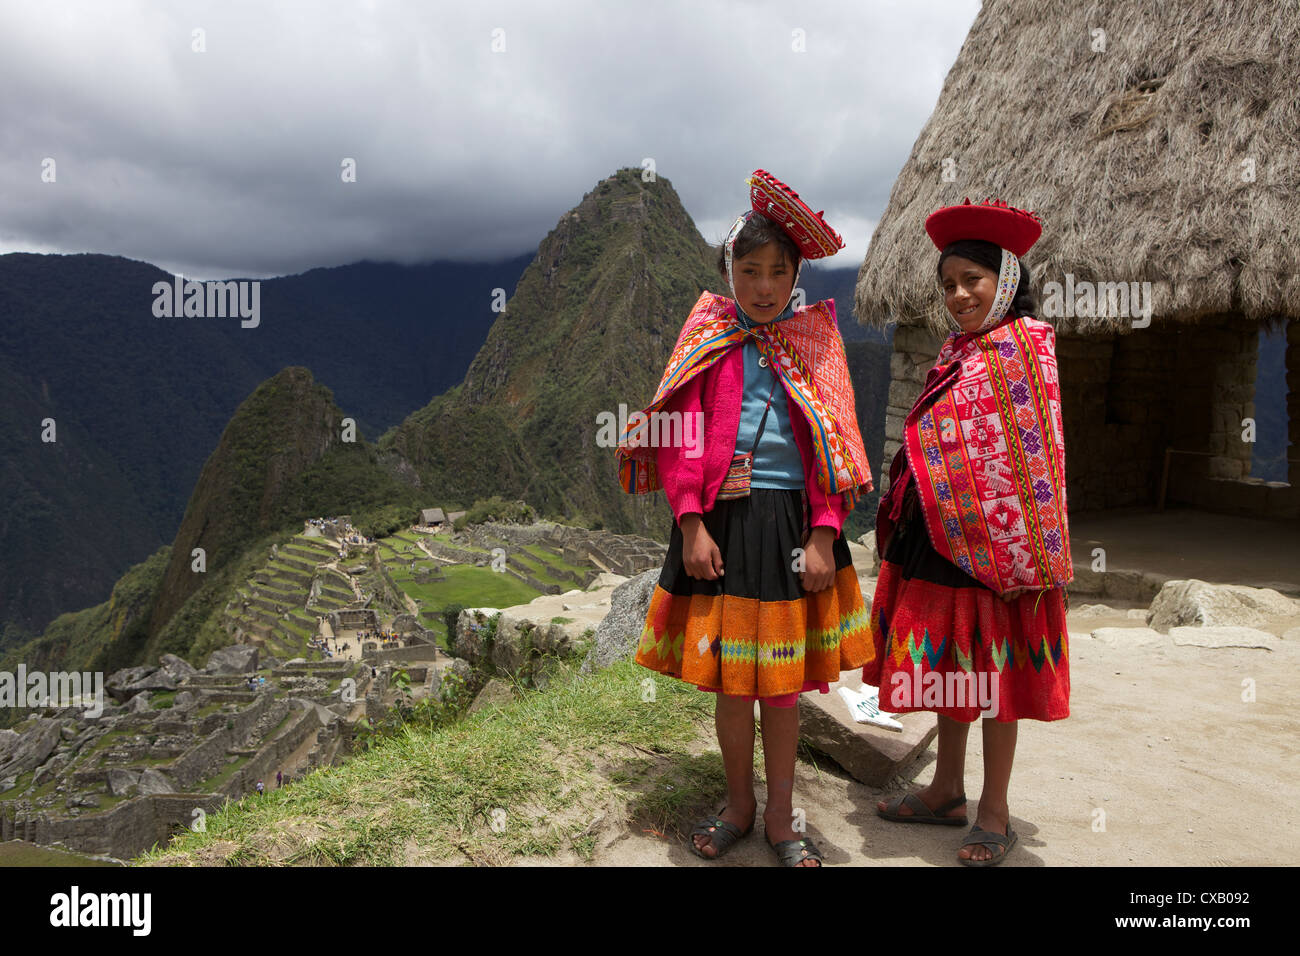 Traditionell gekleidete Kinder mit Blick auf die Ruinen von Machu Picchu, Vilcabamba Berge, Peru, Südamerika Stockfoto